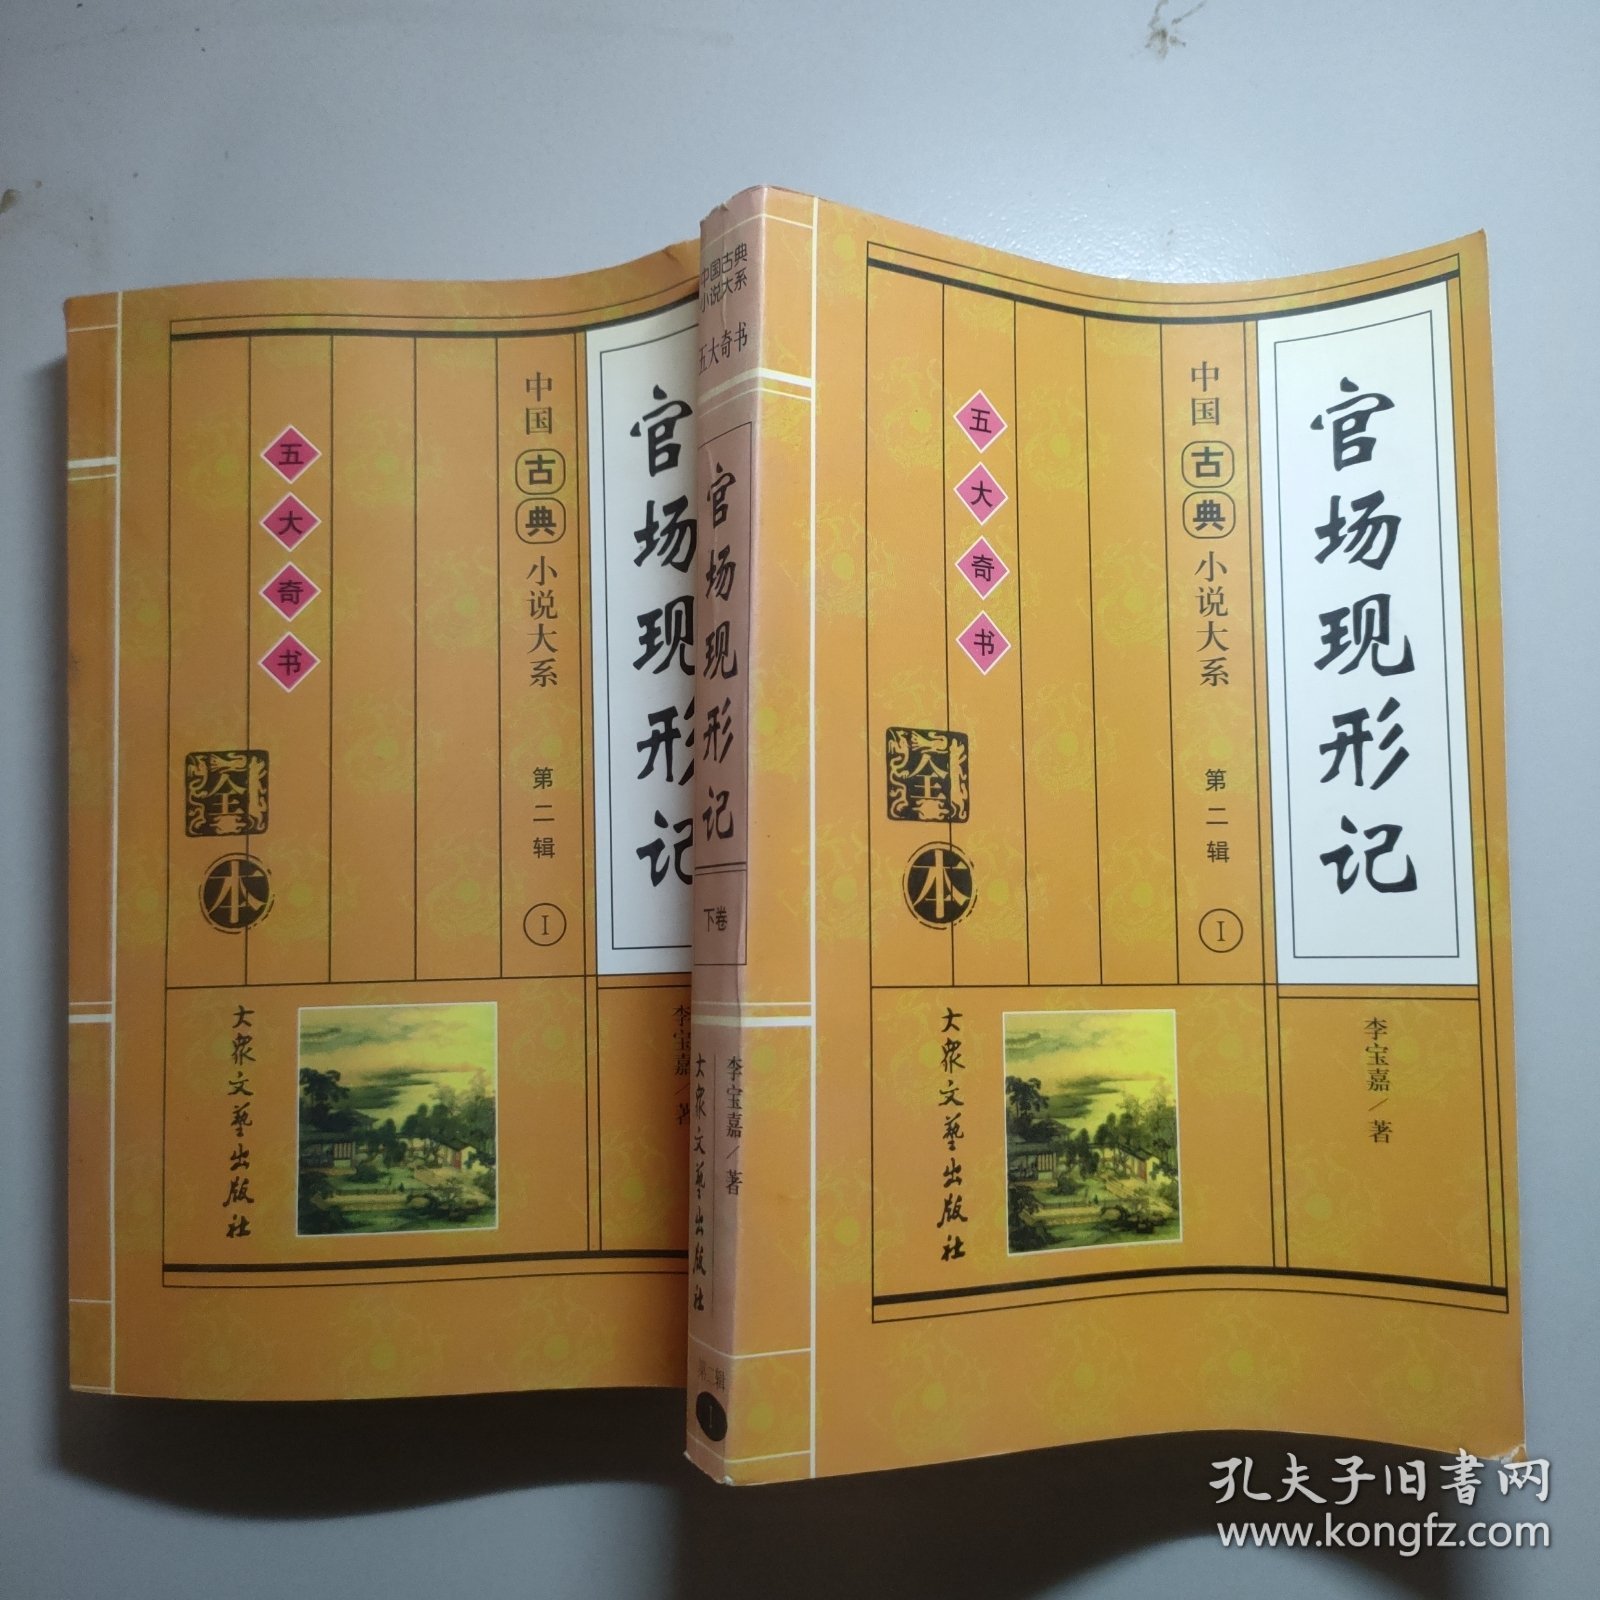 中国古典小说大戏第二辑 五大奇书 全本 官场现行记 上下卷